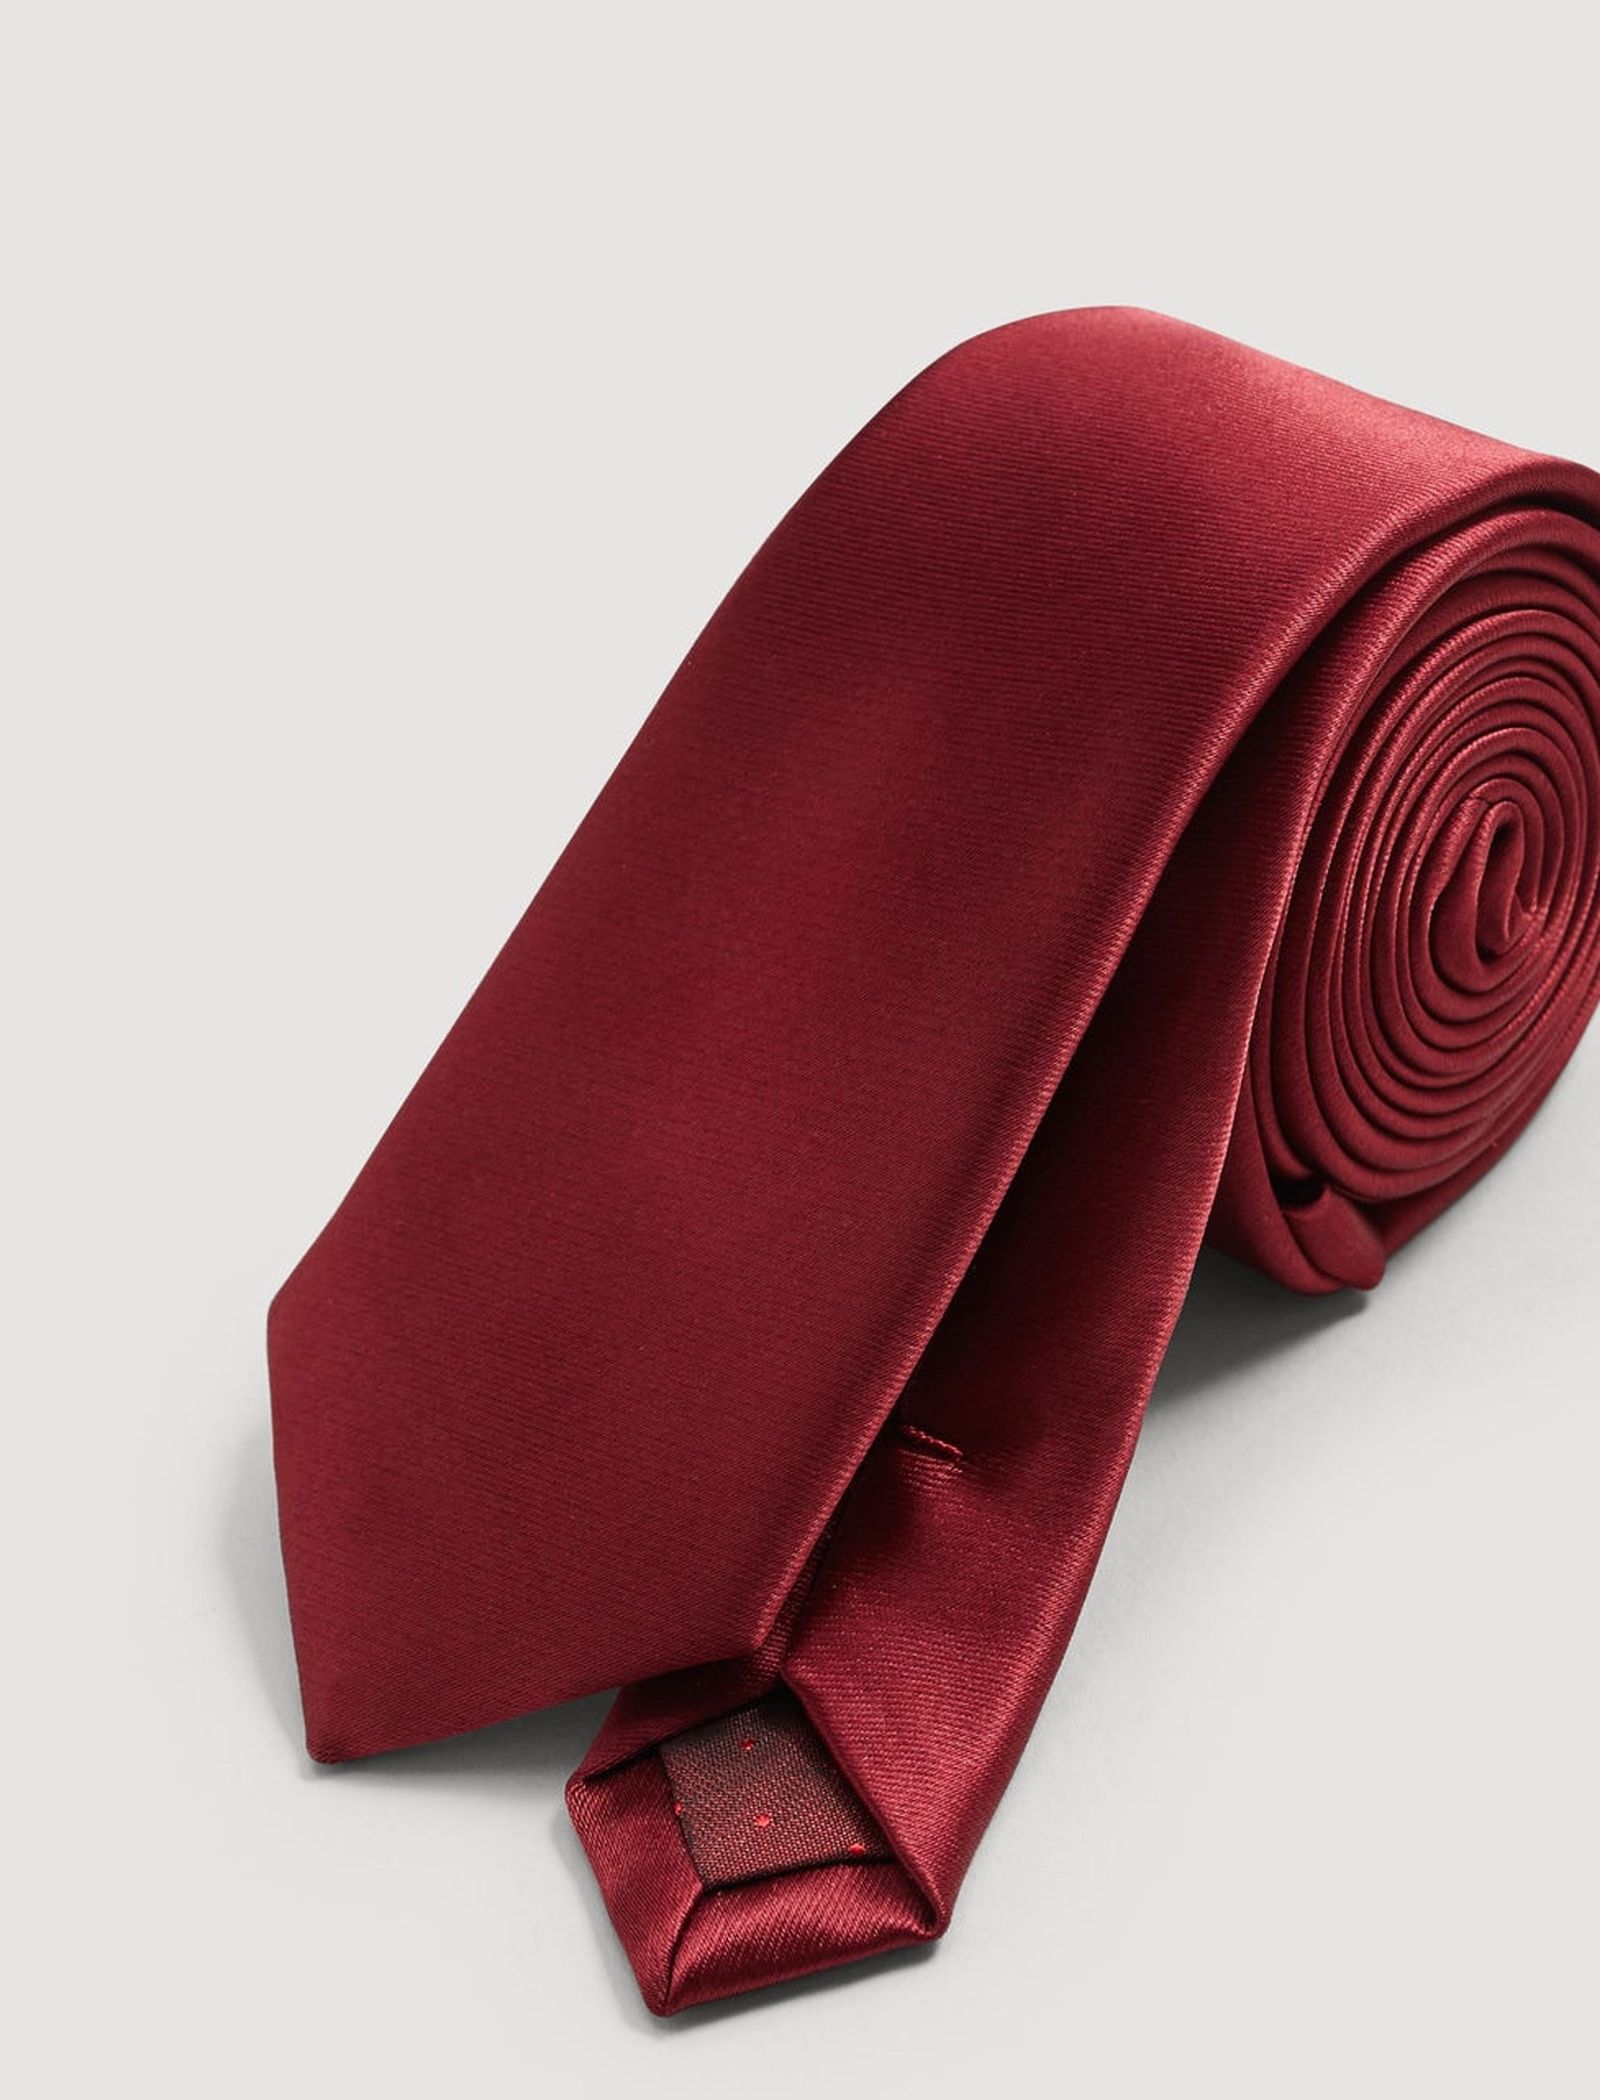 کراوات مانگو مدل 23040558 تک سایز - قرمز - 3